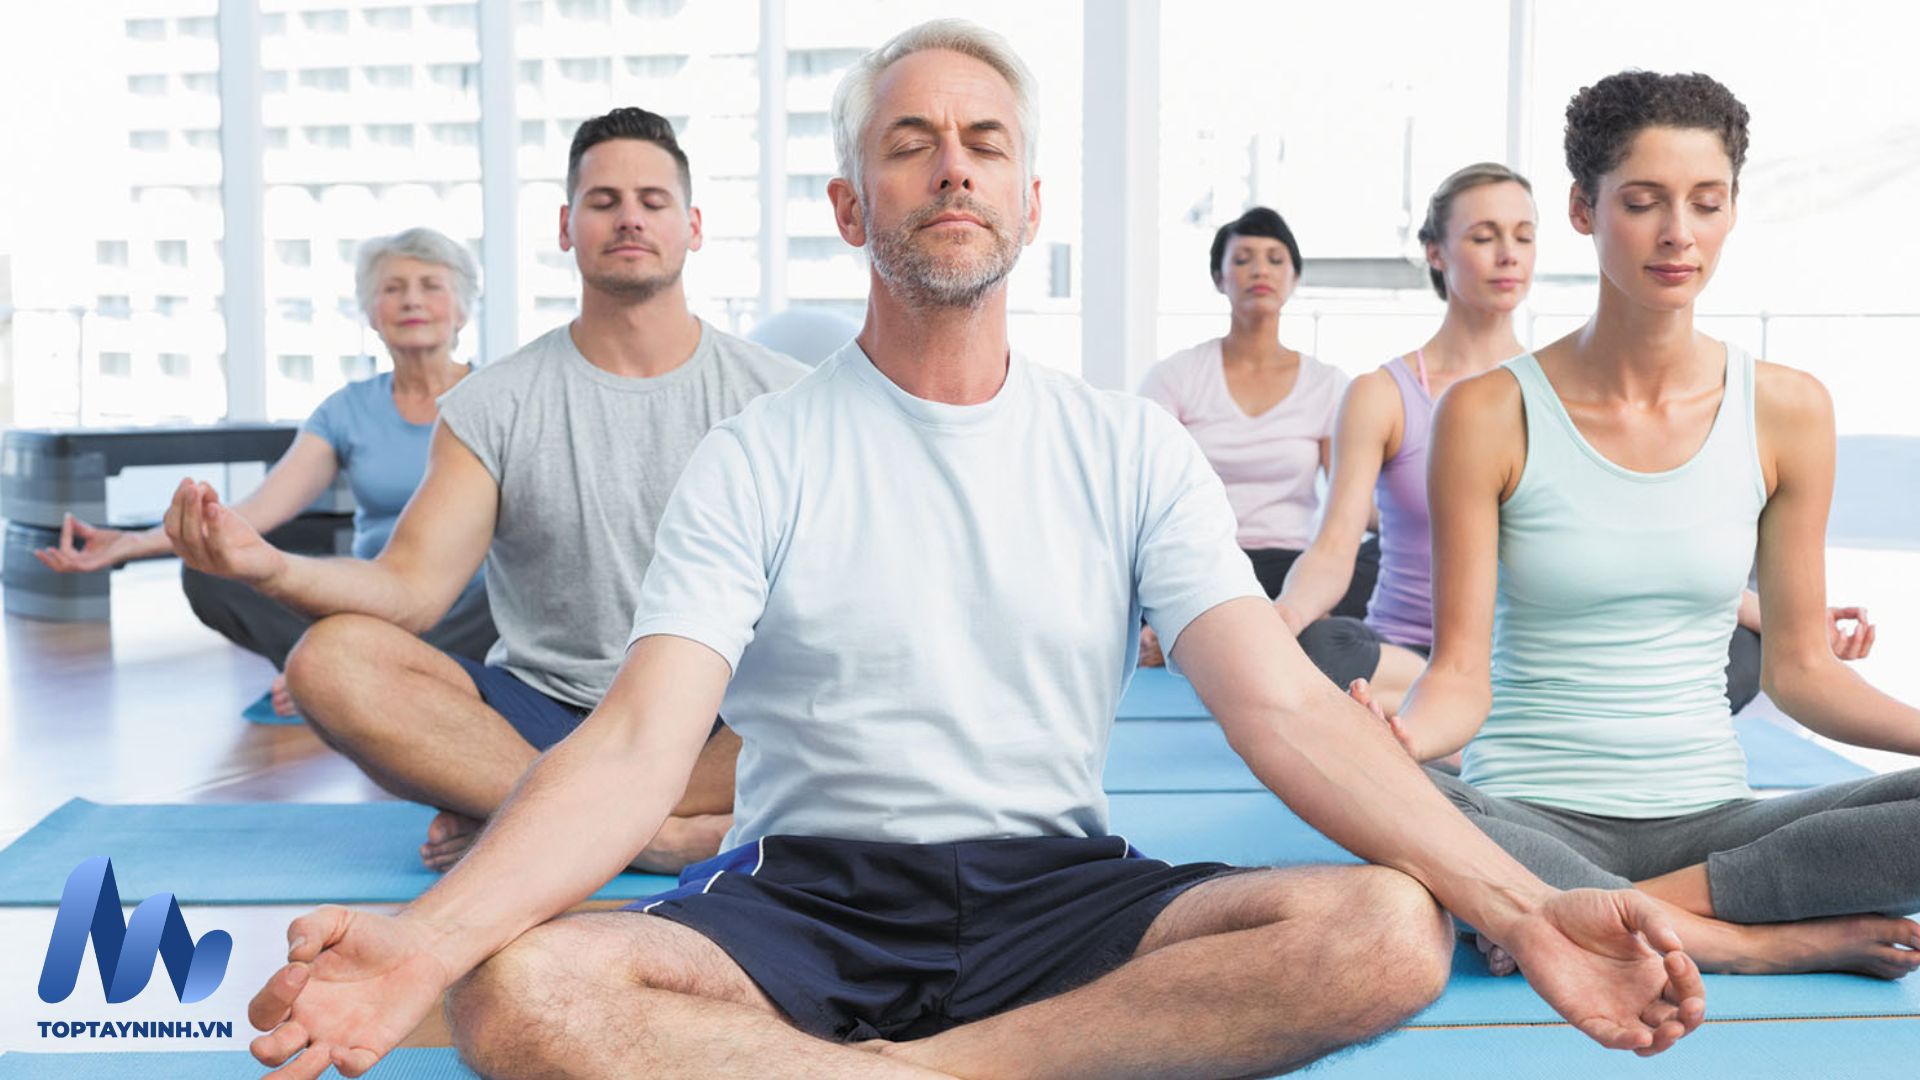 Huỳnh Duyên Yoga với đầy đủ các phụ kiện tập luyện hiện đại